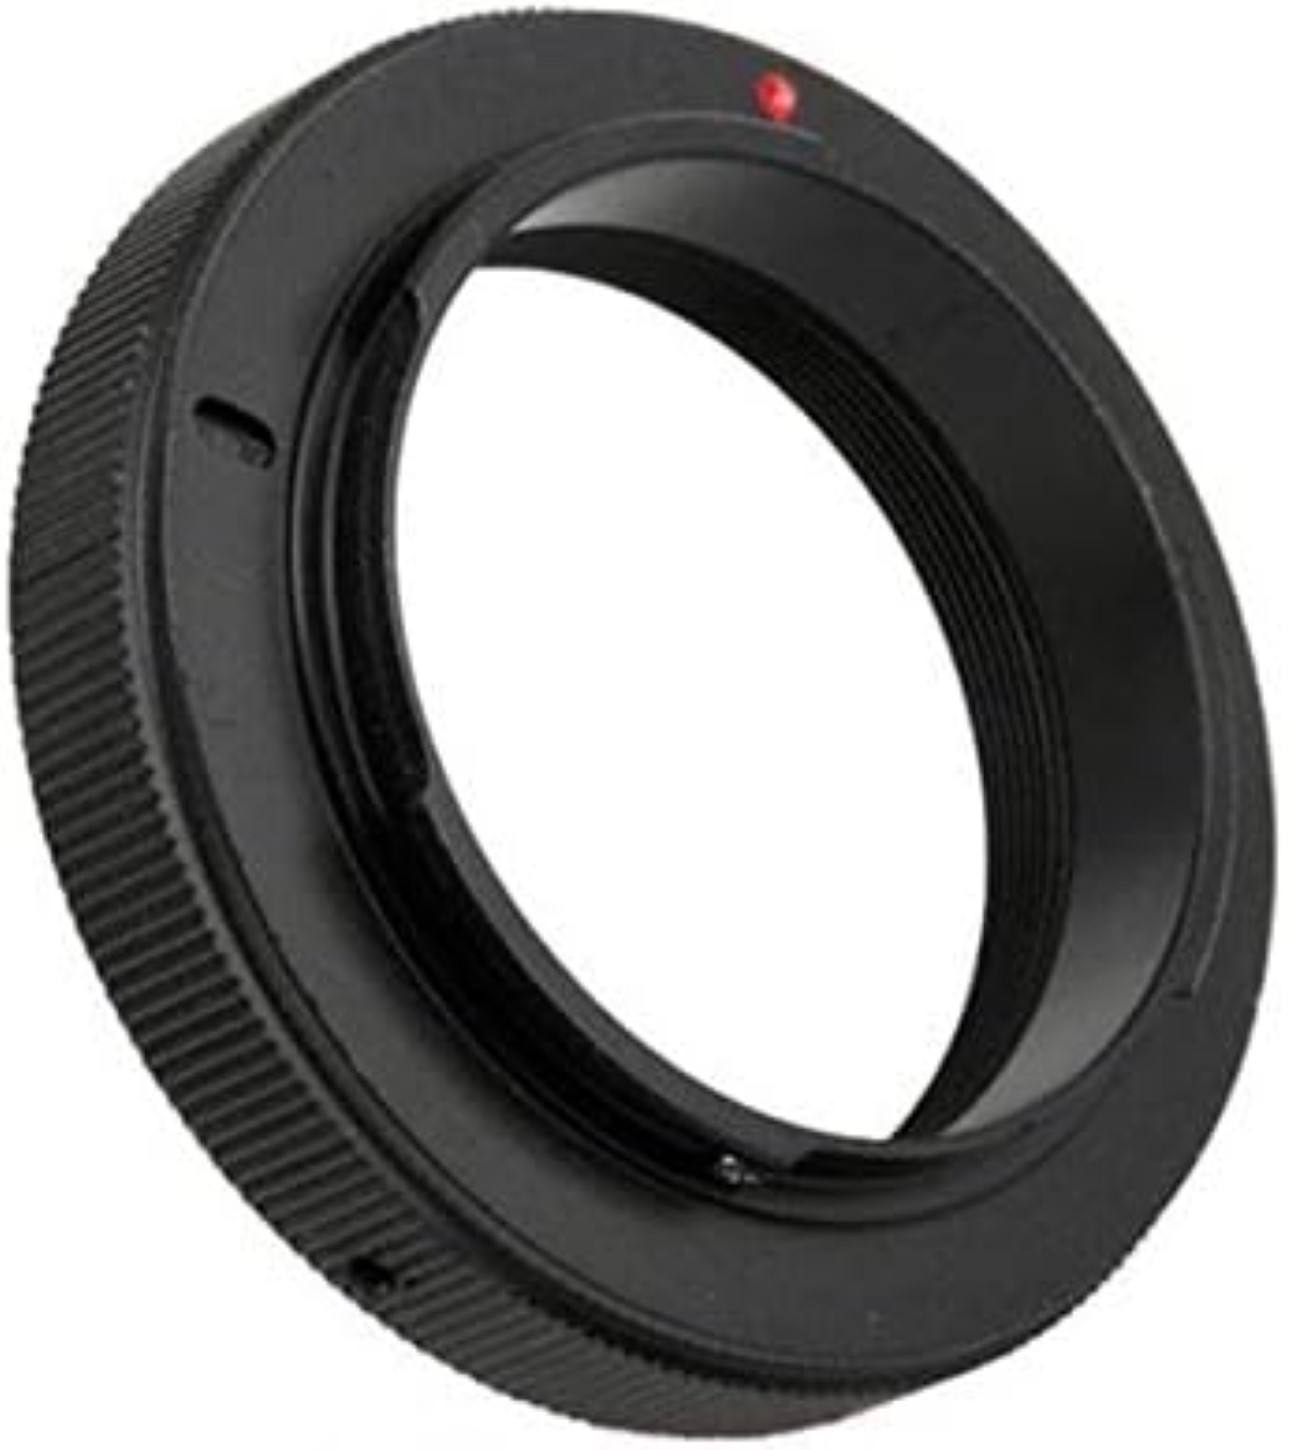 T2-Objektive Adapter auf Nikon